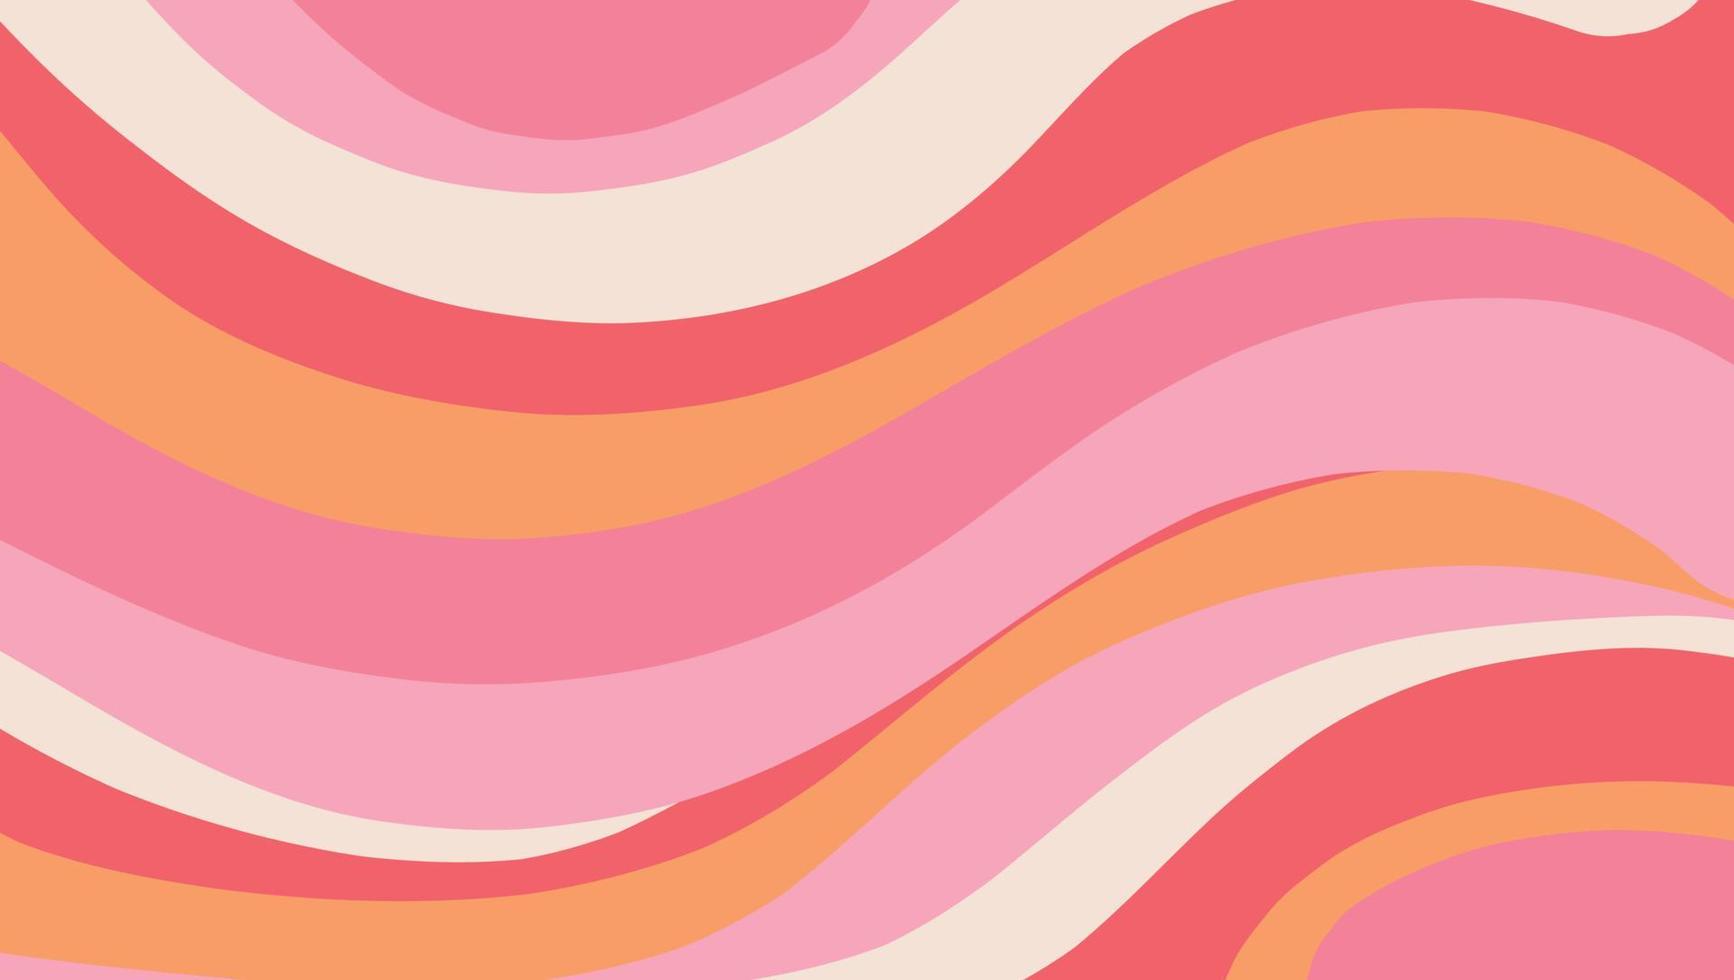 fondo abstracto. ilustración vectorial de ondas de colores en estilo retro para una impresión o anuncio. fondo con rayas rosas y moradas. vector